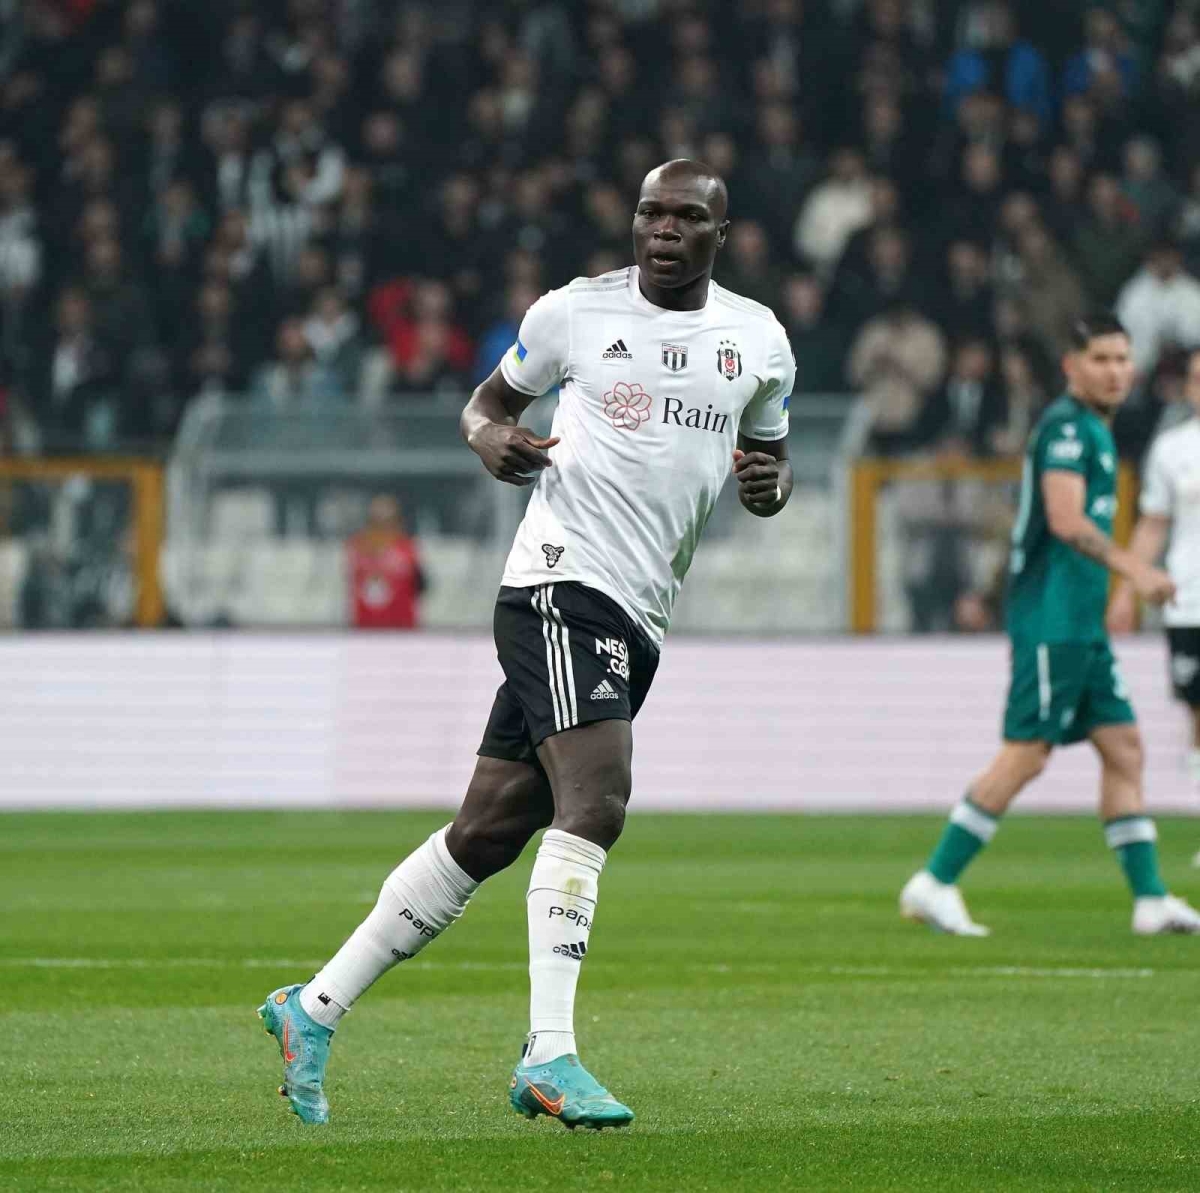 Spor Toto Süper Lig: Beşiktaş: 2 - Giresunspor: 1 (İlk yarı)
